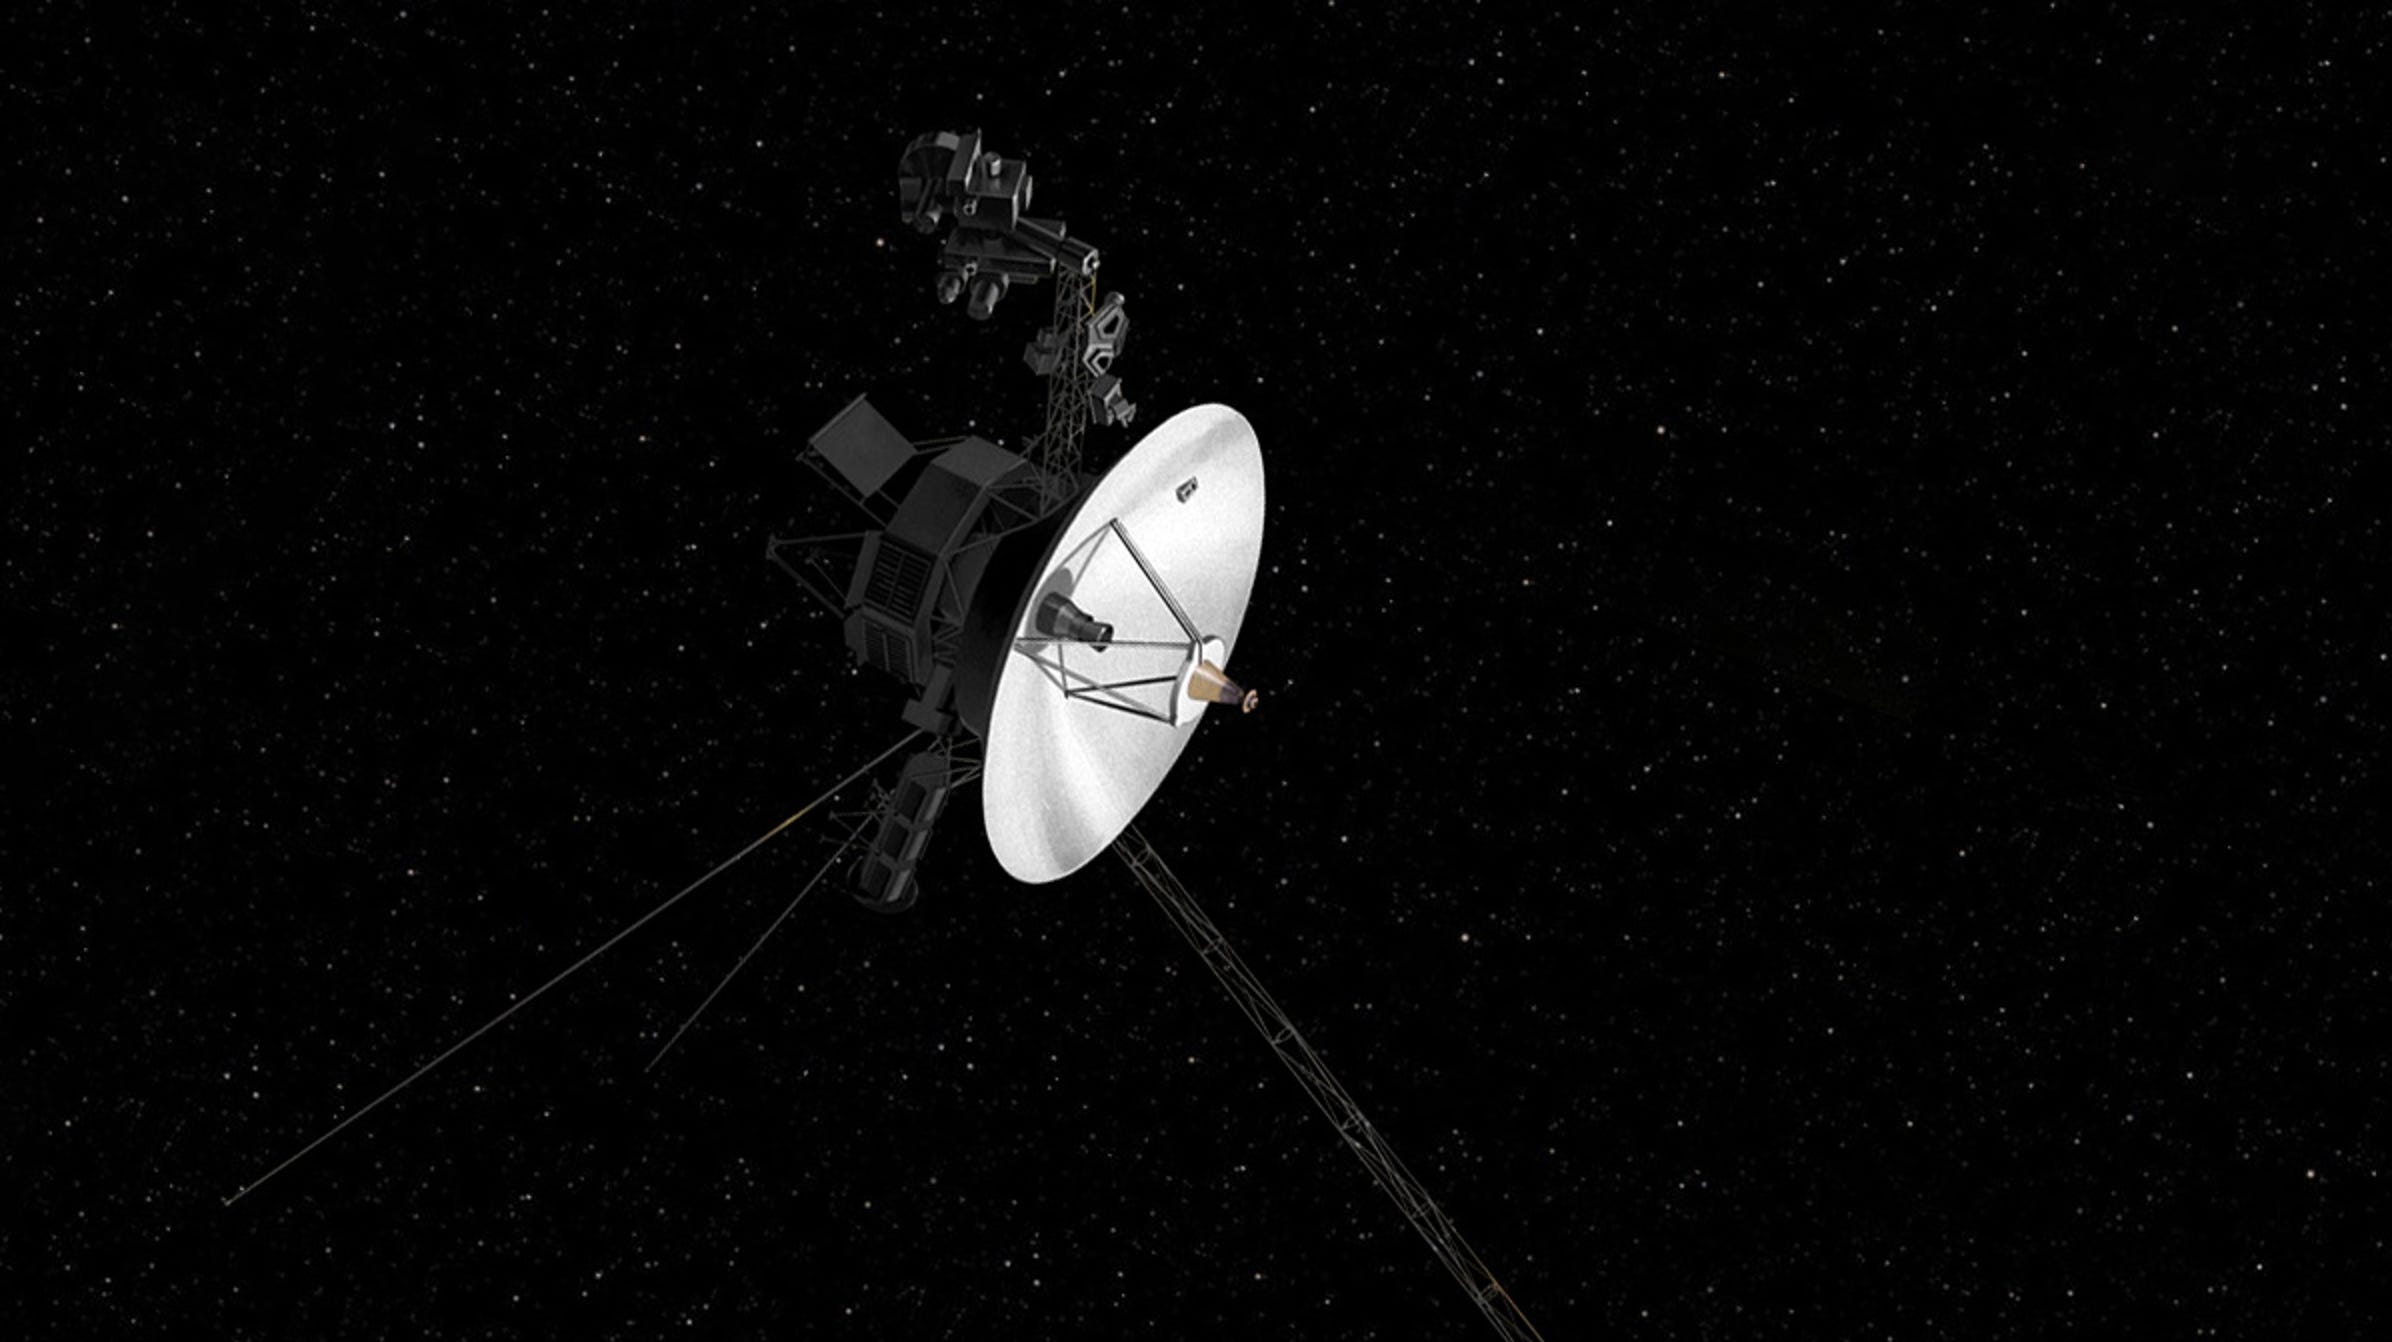 La sonde spatiale Voyager 1, âgée de 45 ans, vient de recevoir une mise à jour logicielle